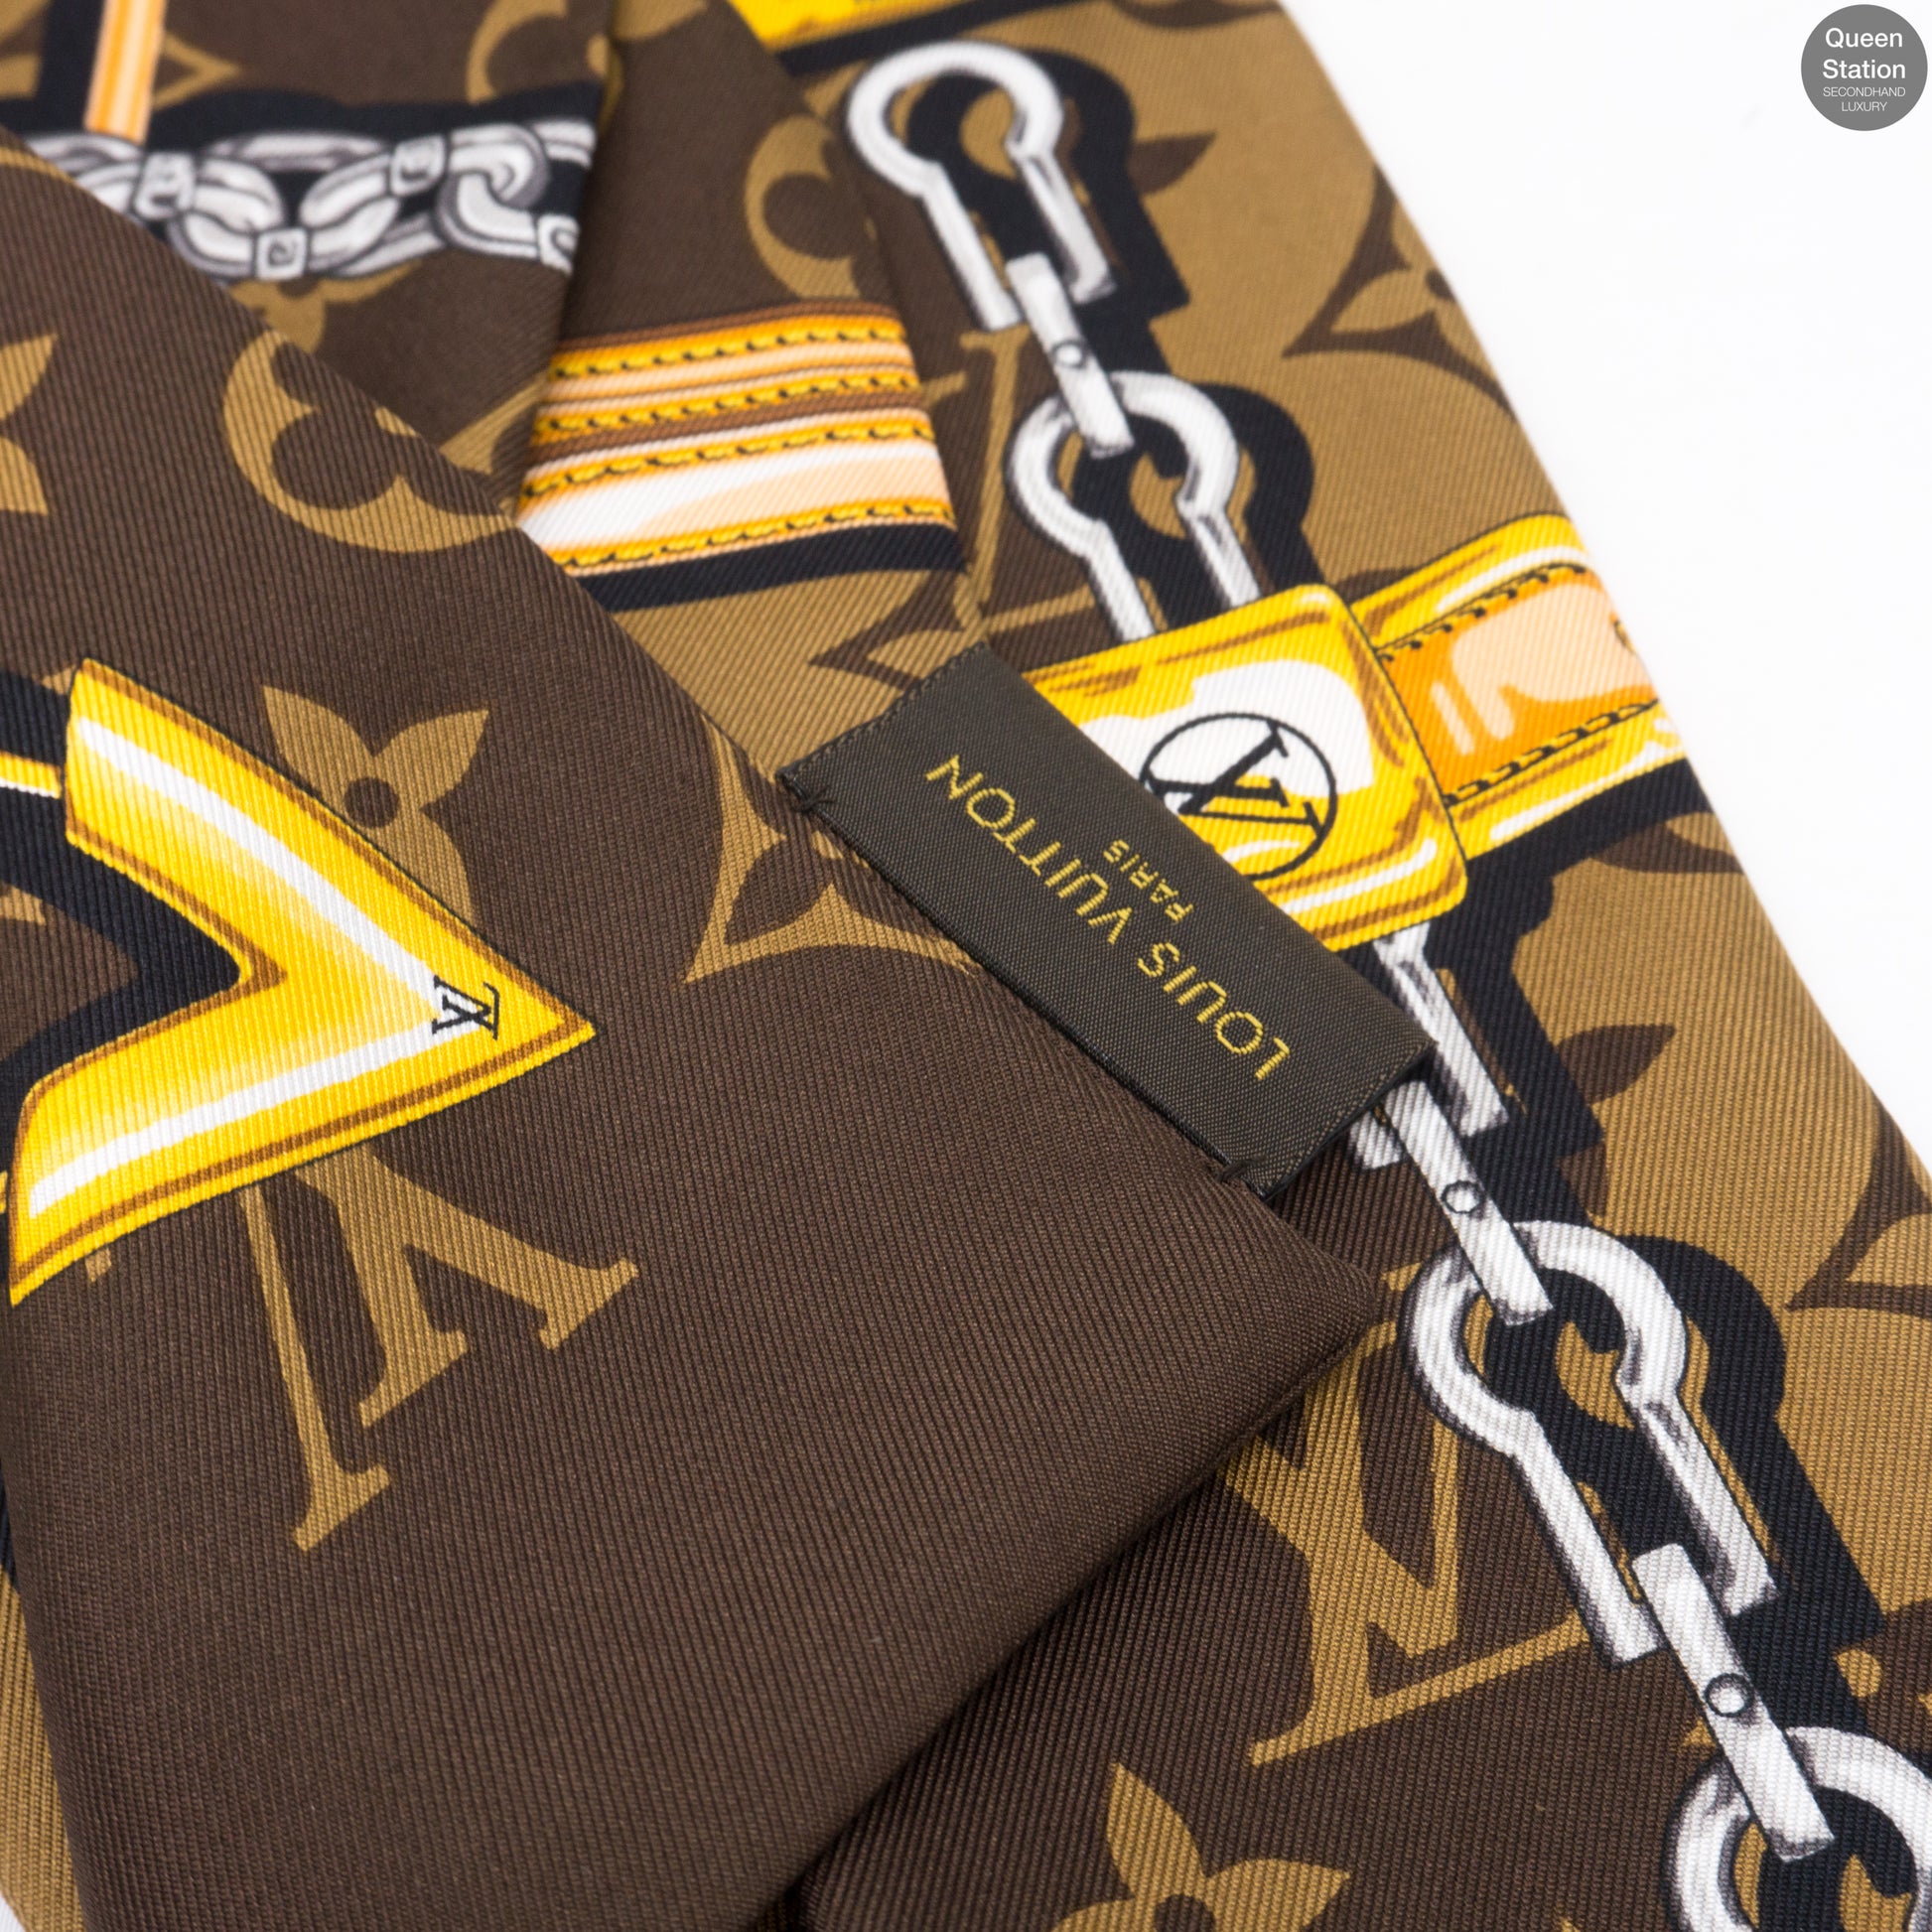 Louis Vuitton Monogram Confidential Bandeau Wrapped Handle 